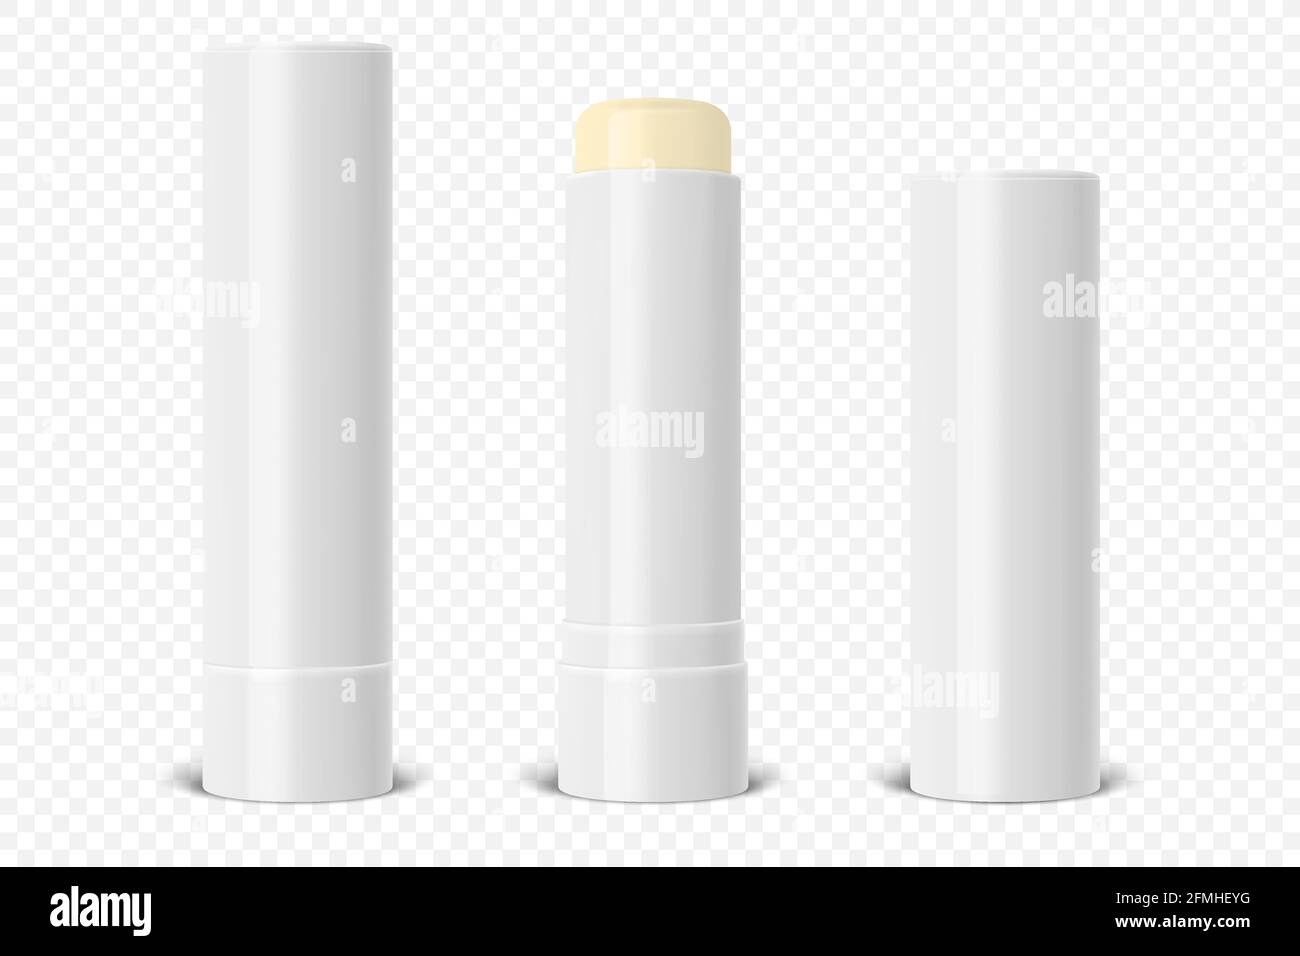 Vector Realistic 3d blanc blanc brillant fermé, ouvert lèvre Balm Stick, Hygienic Lipstick Set Closeup isolé. Modèle de conception pour les graphiques, Vector Illustration de Vecteur